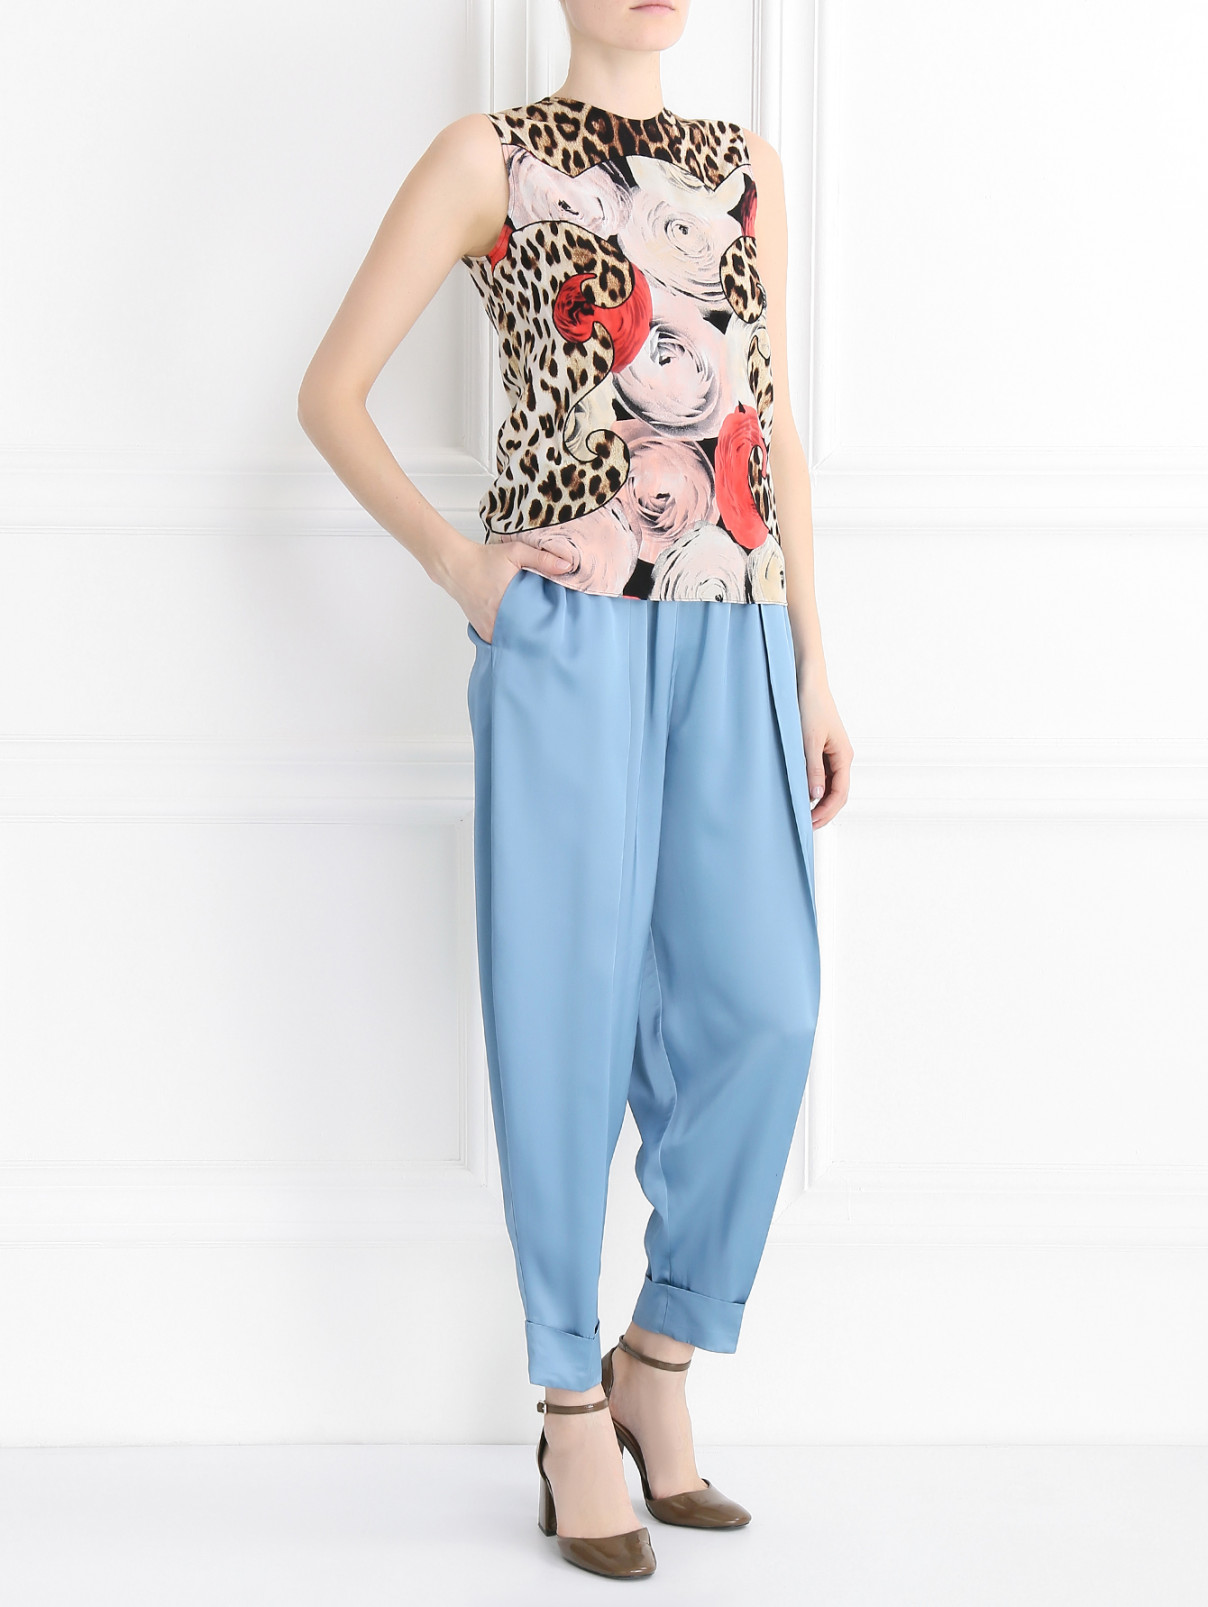 Зауженные брюки со складками Jean Paul Gaultier  –  Модель Общий вид  – Цвет:  Синий